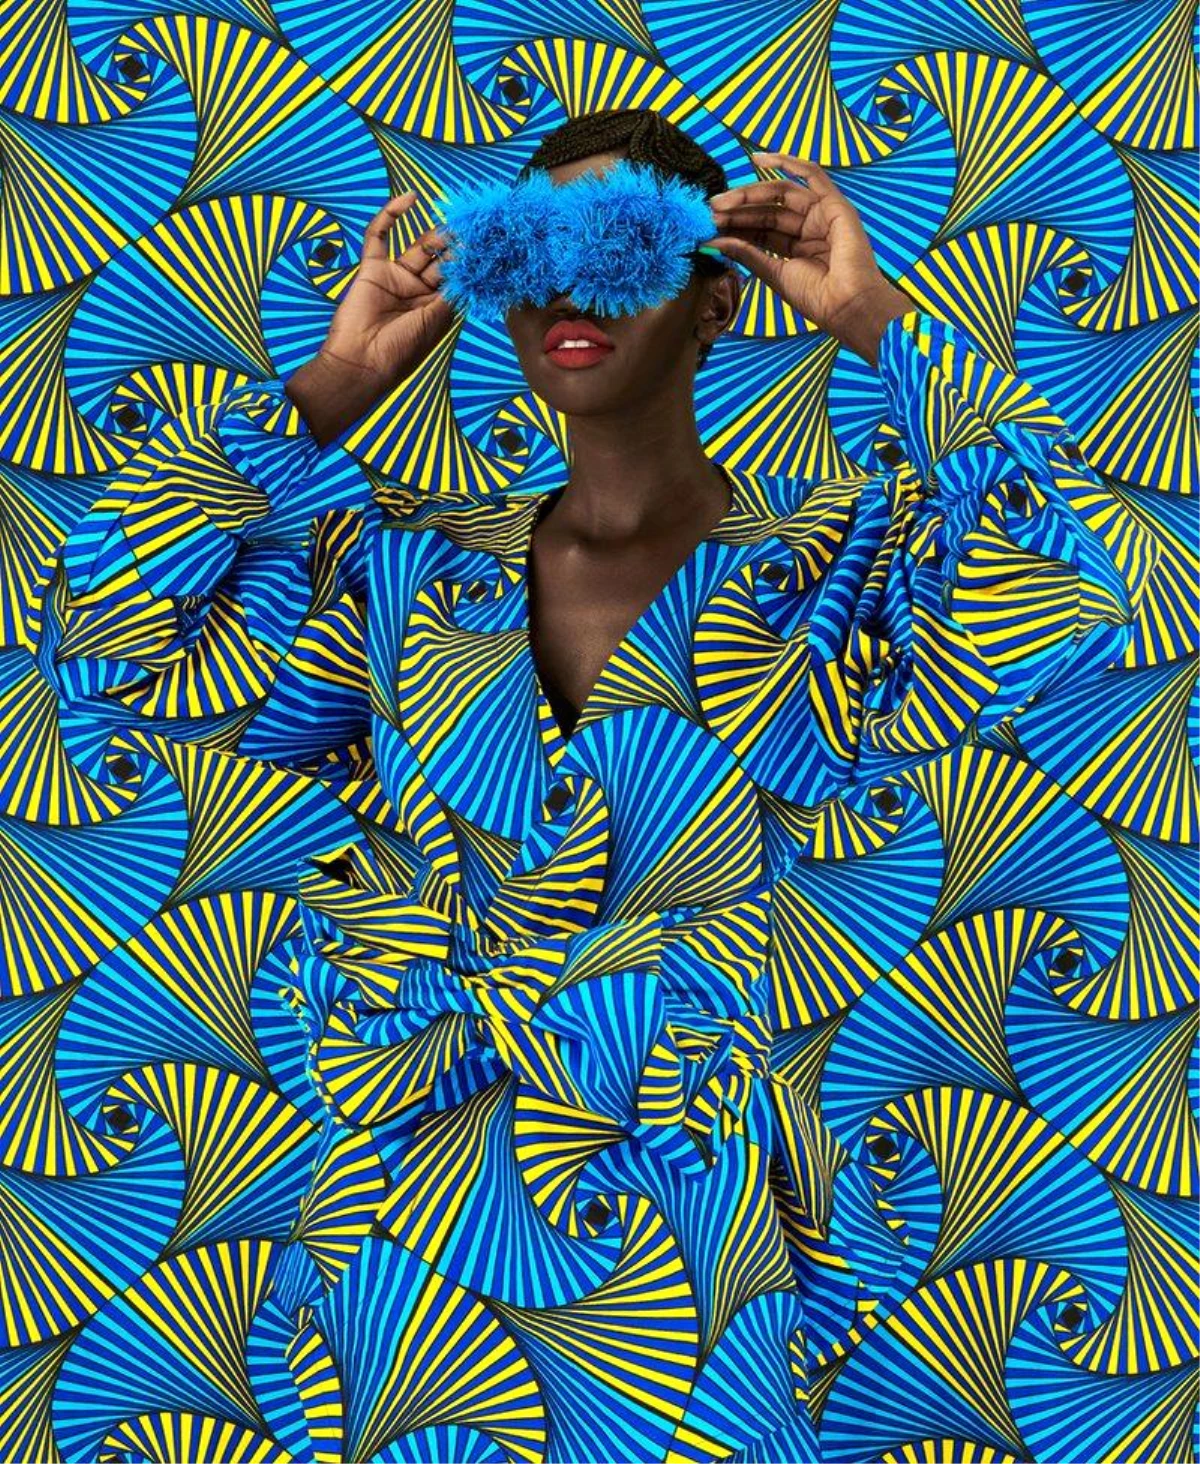 Kenyalı fotoğrafçı Thandiwe Muriu ve kamuflajlı modellerin cazibesi